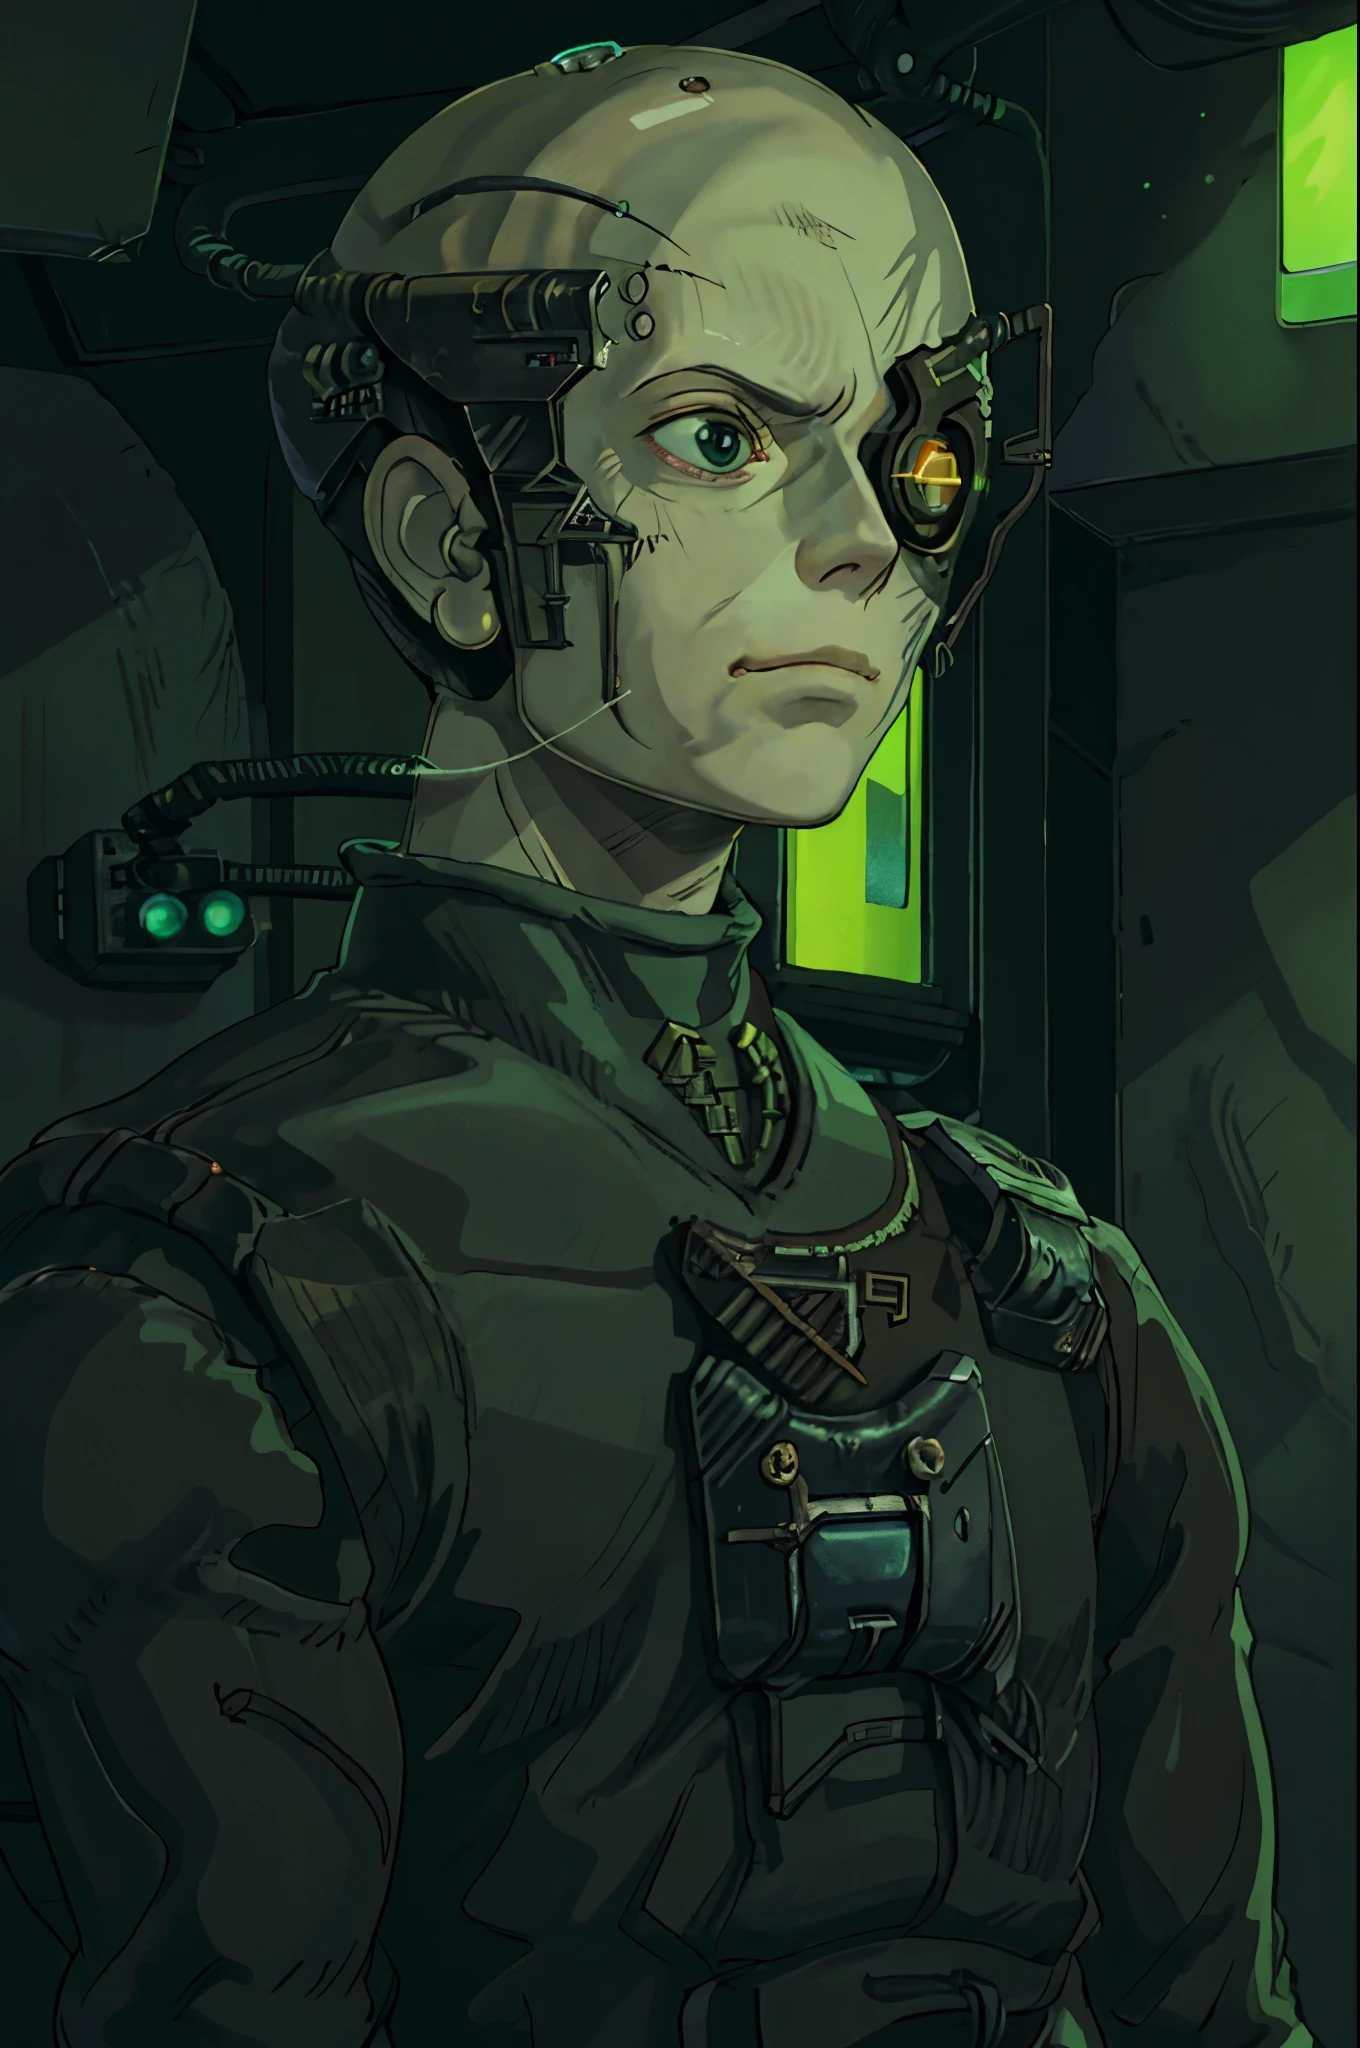 Ghibli-Stil, Borg, Cyborg, kahl, graue Haut, Adern, Metallrüstung, Kabel, Augenklappe, in einem Raum mit grellgrünen Neonlichtern und Nischen, strahlenden Lichtern, ausdrucksloser Gesichtsausdruck, Borg-Würfel